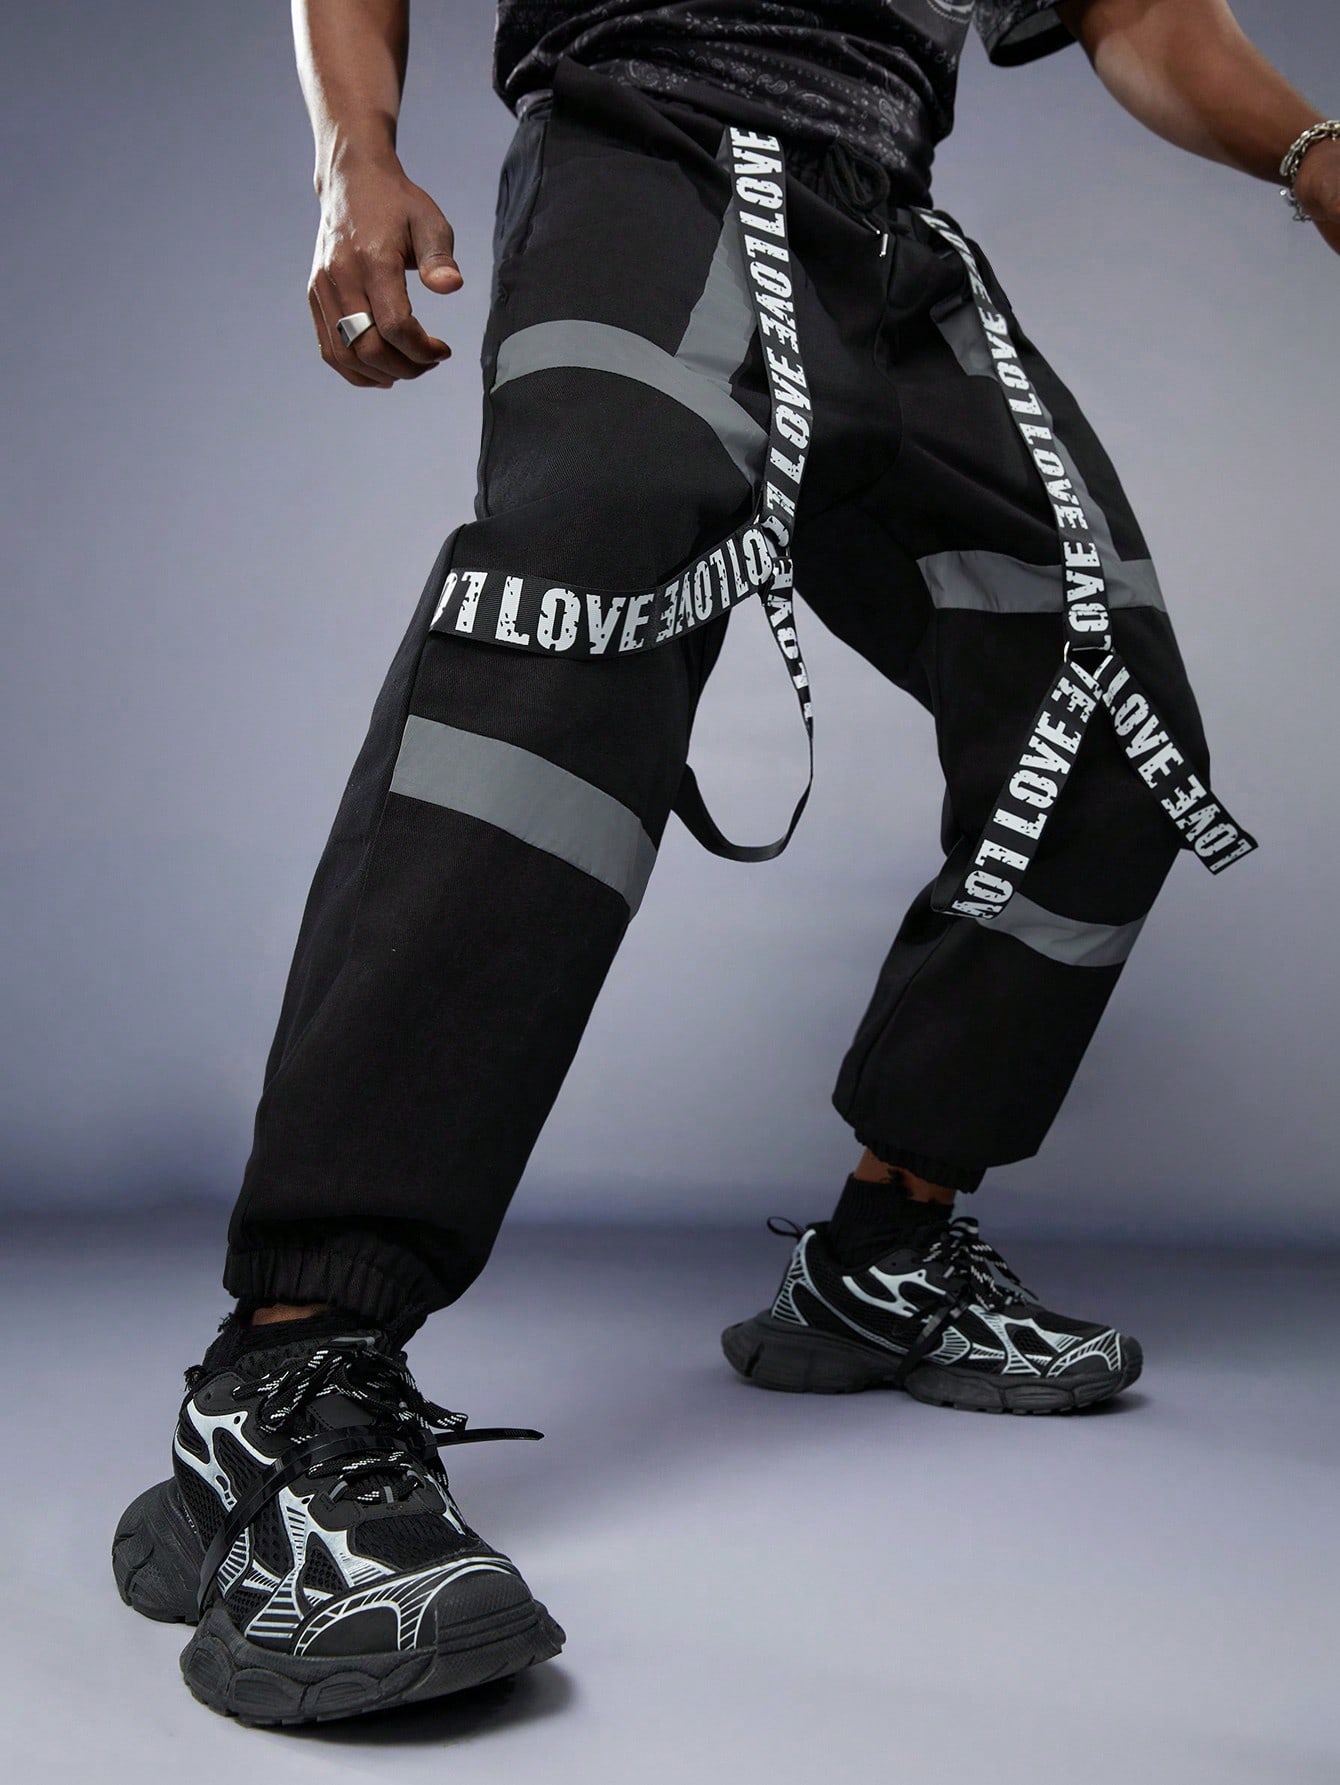 Мужские брюки Manfinity StreetEZ контрастного цвета со светоотражающими полосками и буквами на талии с завязкой на талии, черный